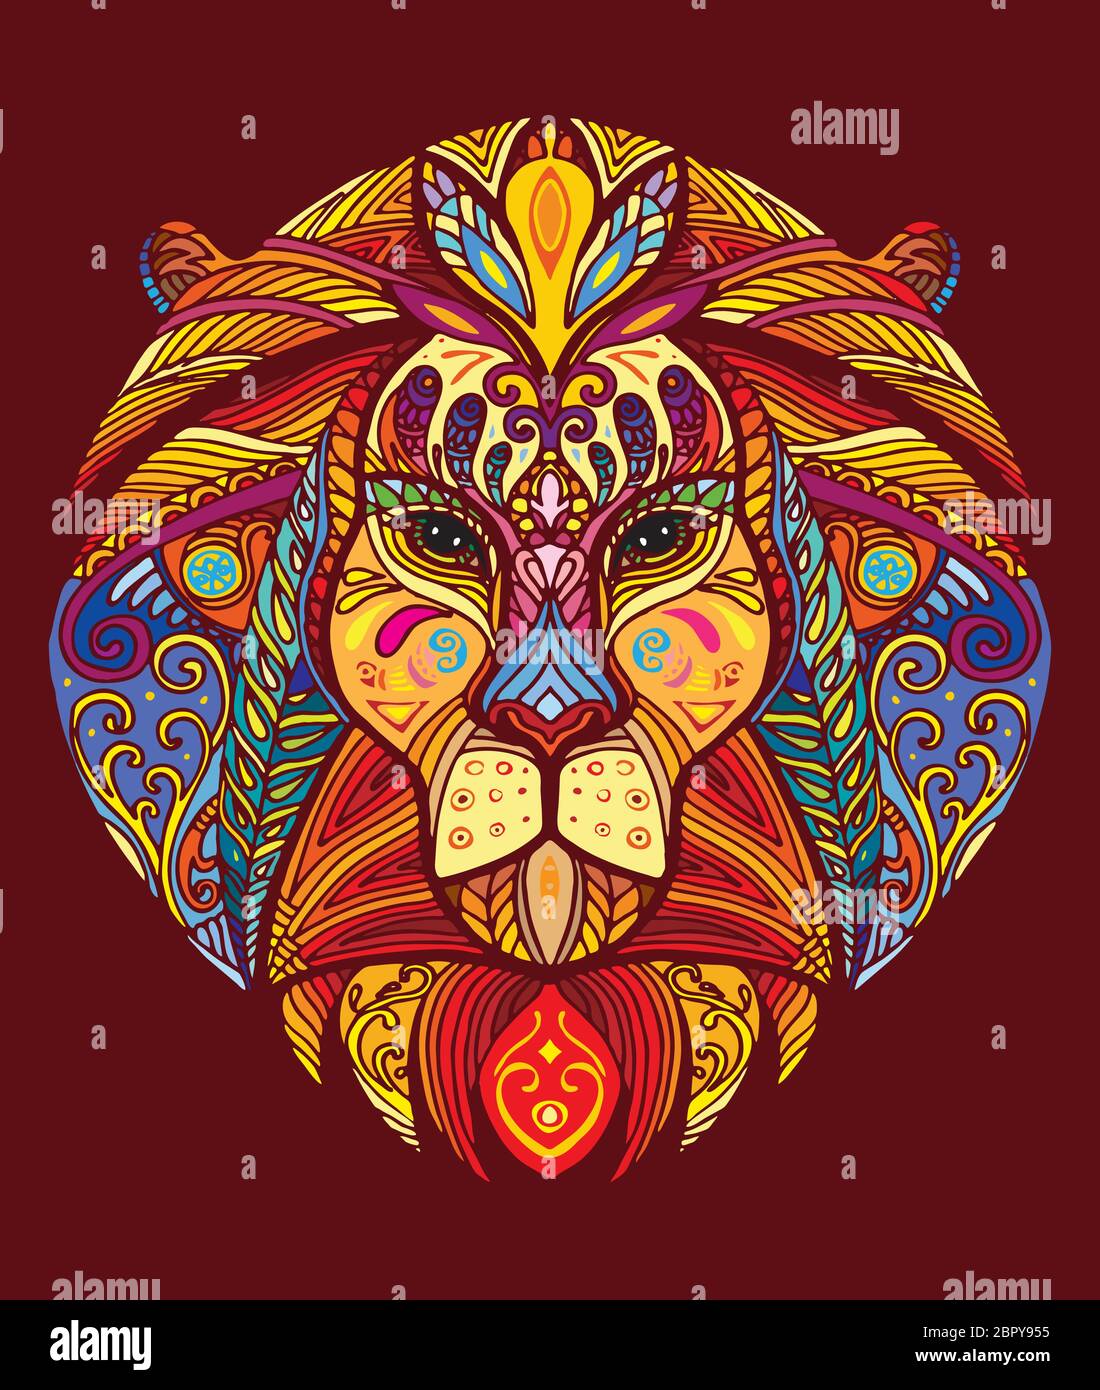 Vettore decorativo doodle testa ornamentale del leone. Vettore astratto colorato illustrazione della testa del leone isolato su sfondo rosso. Illustrazione del magazzino per Illustrazione Vettoriale